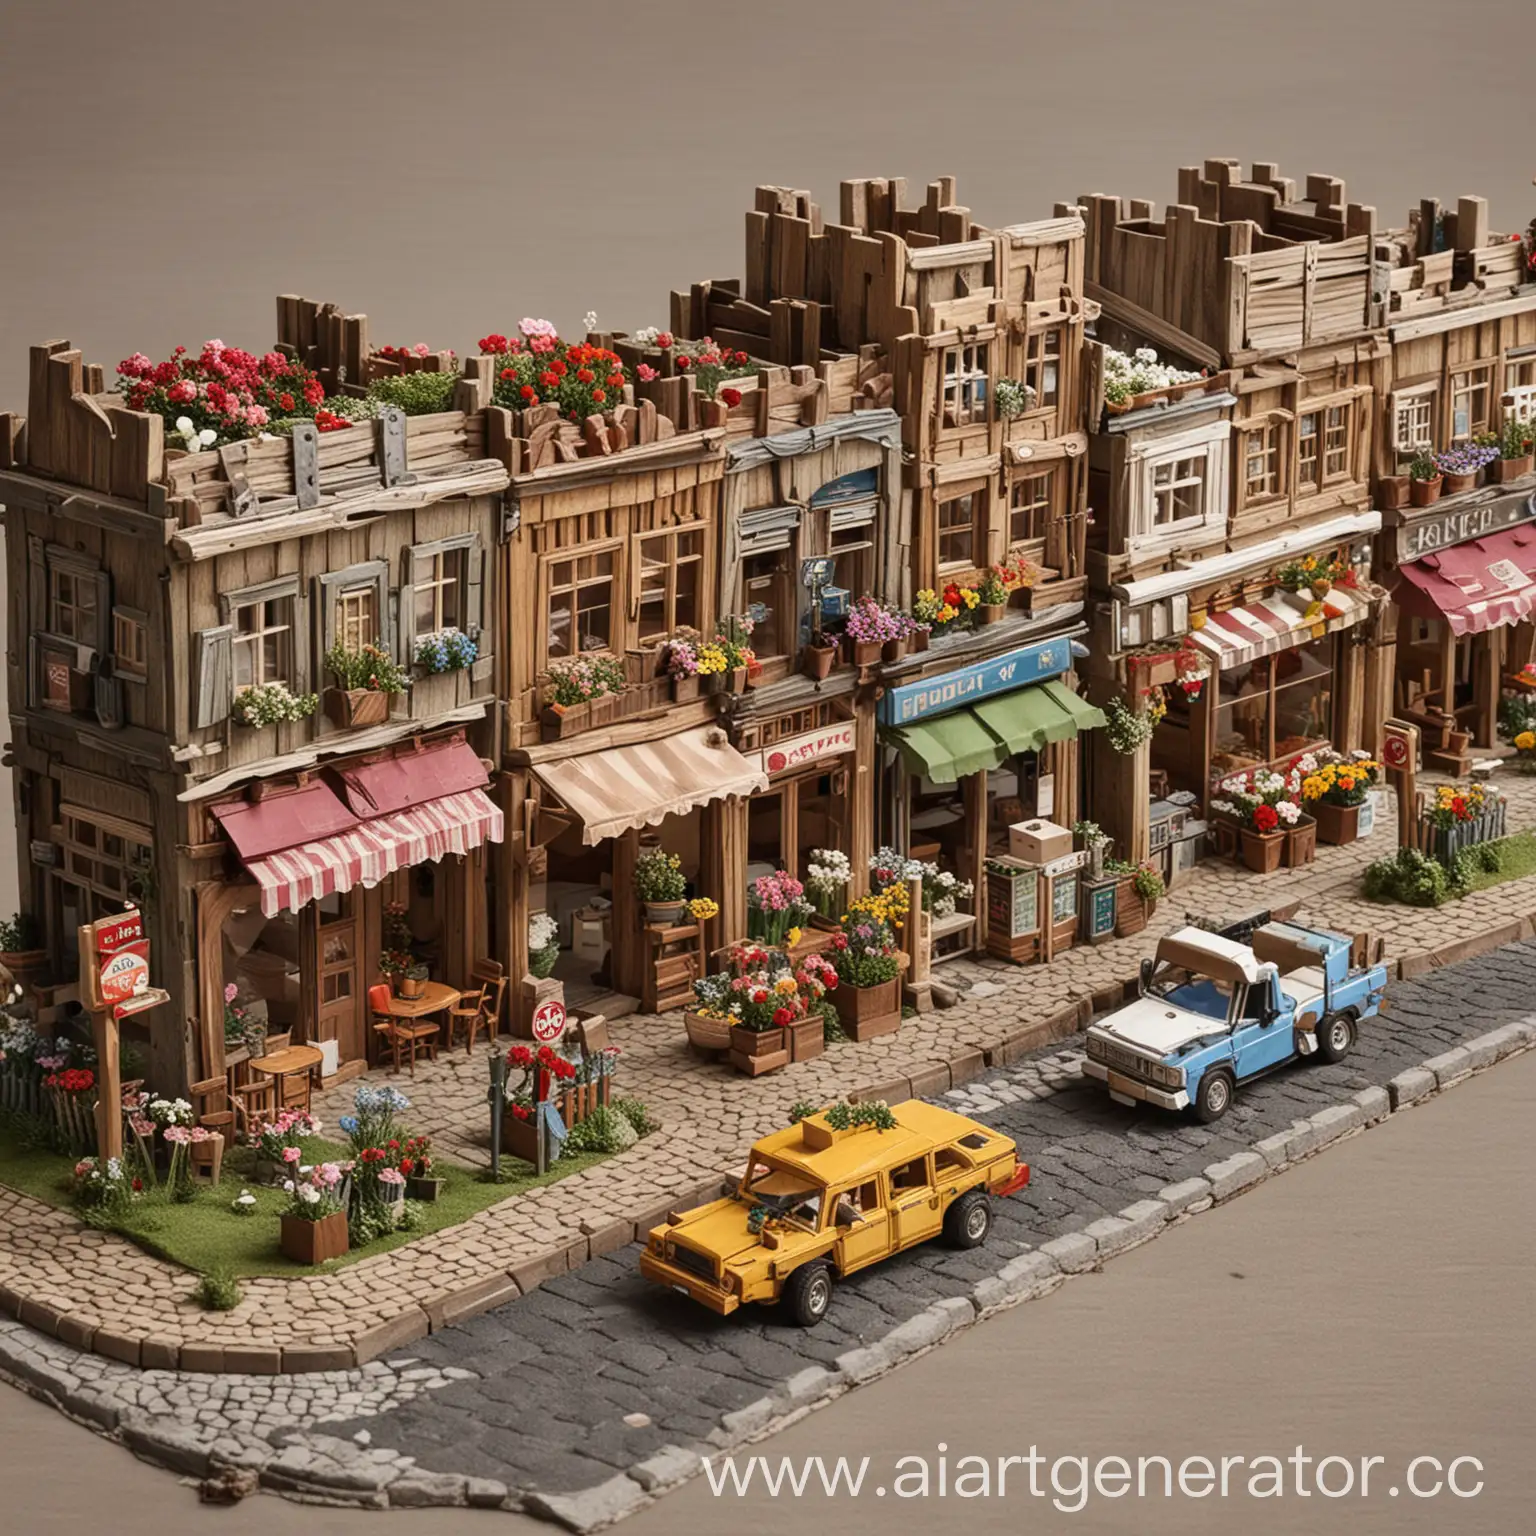 Дорога с автомобилями, с кафе, цветочными магазинами, аллеей, собранный из деревянного конструктора